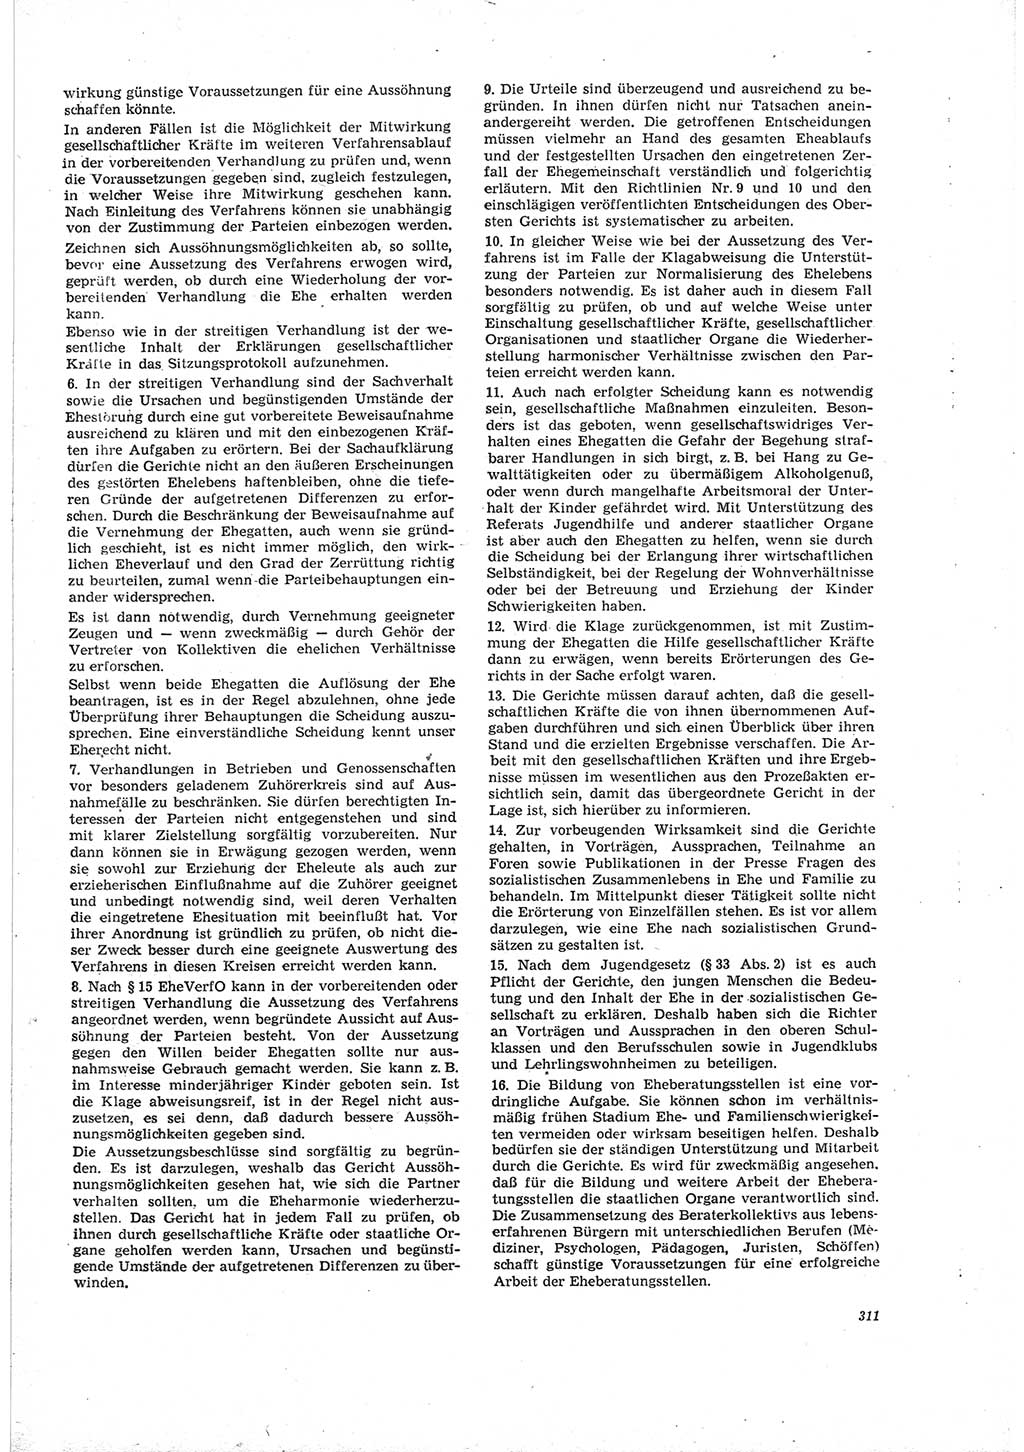 Neue Justiz (NJ), Zeitschrift für Recht und Rechtswissenschaft [Deutsche Demokratische Republik (DDR)], 19. Jahrgang 1965, Seite 311 (NJ DDR 1965, S. 311)